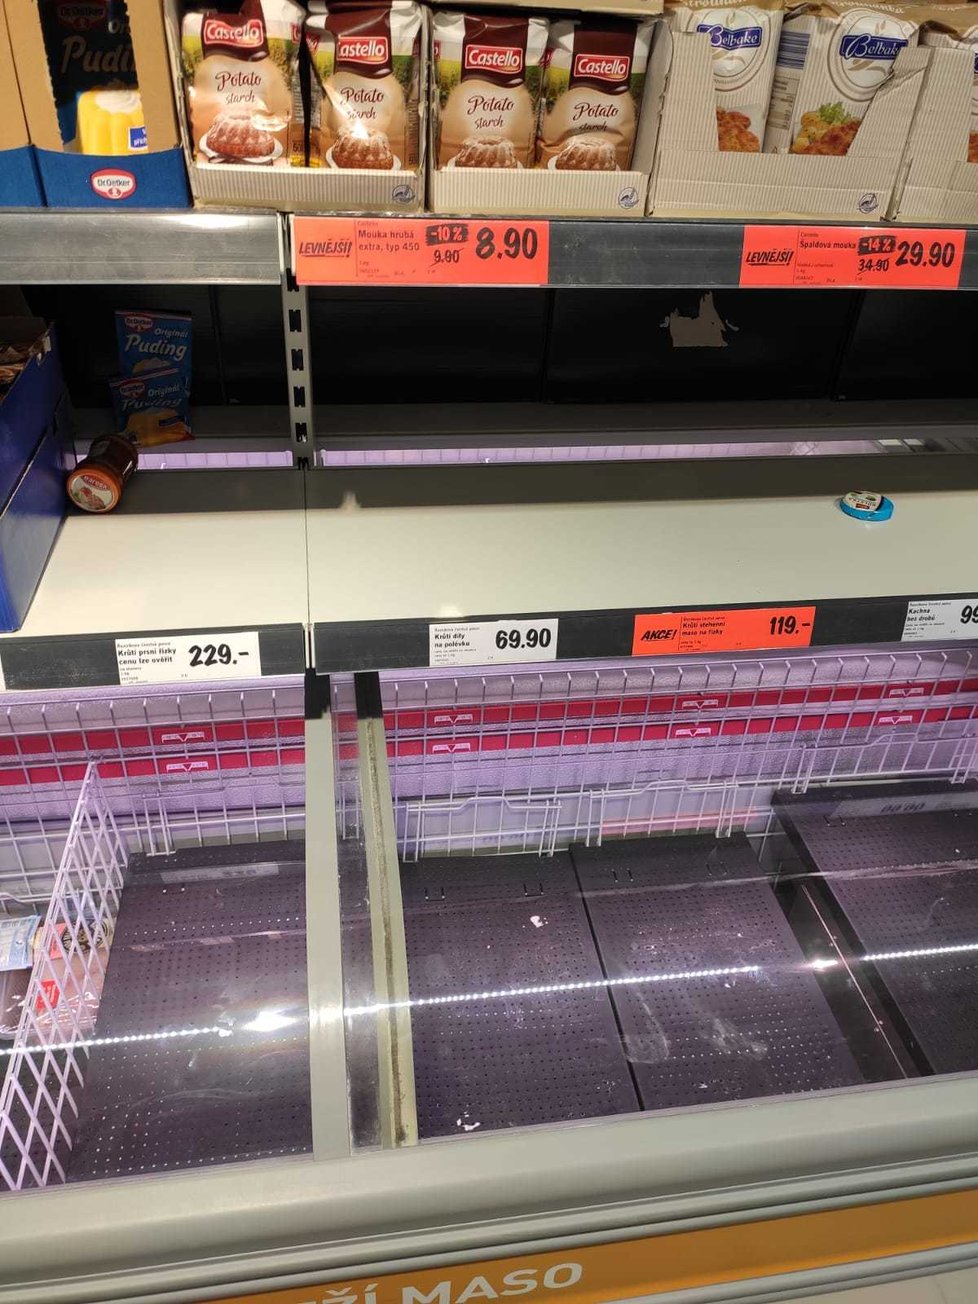 Police v supermarketu v Praze 13 jsou prázdné. Lidé si dělají zásoby kvůli vyhlášení stavu nouze.